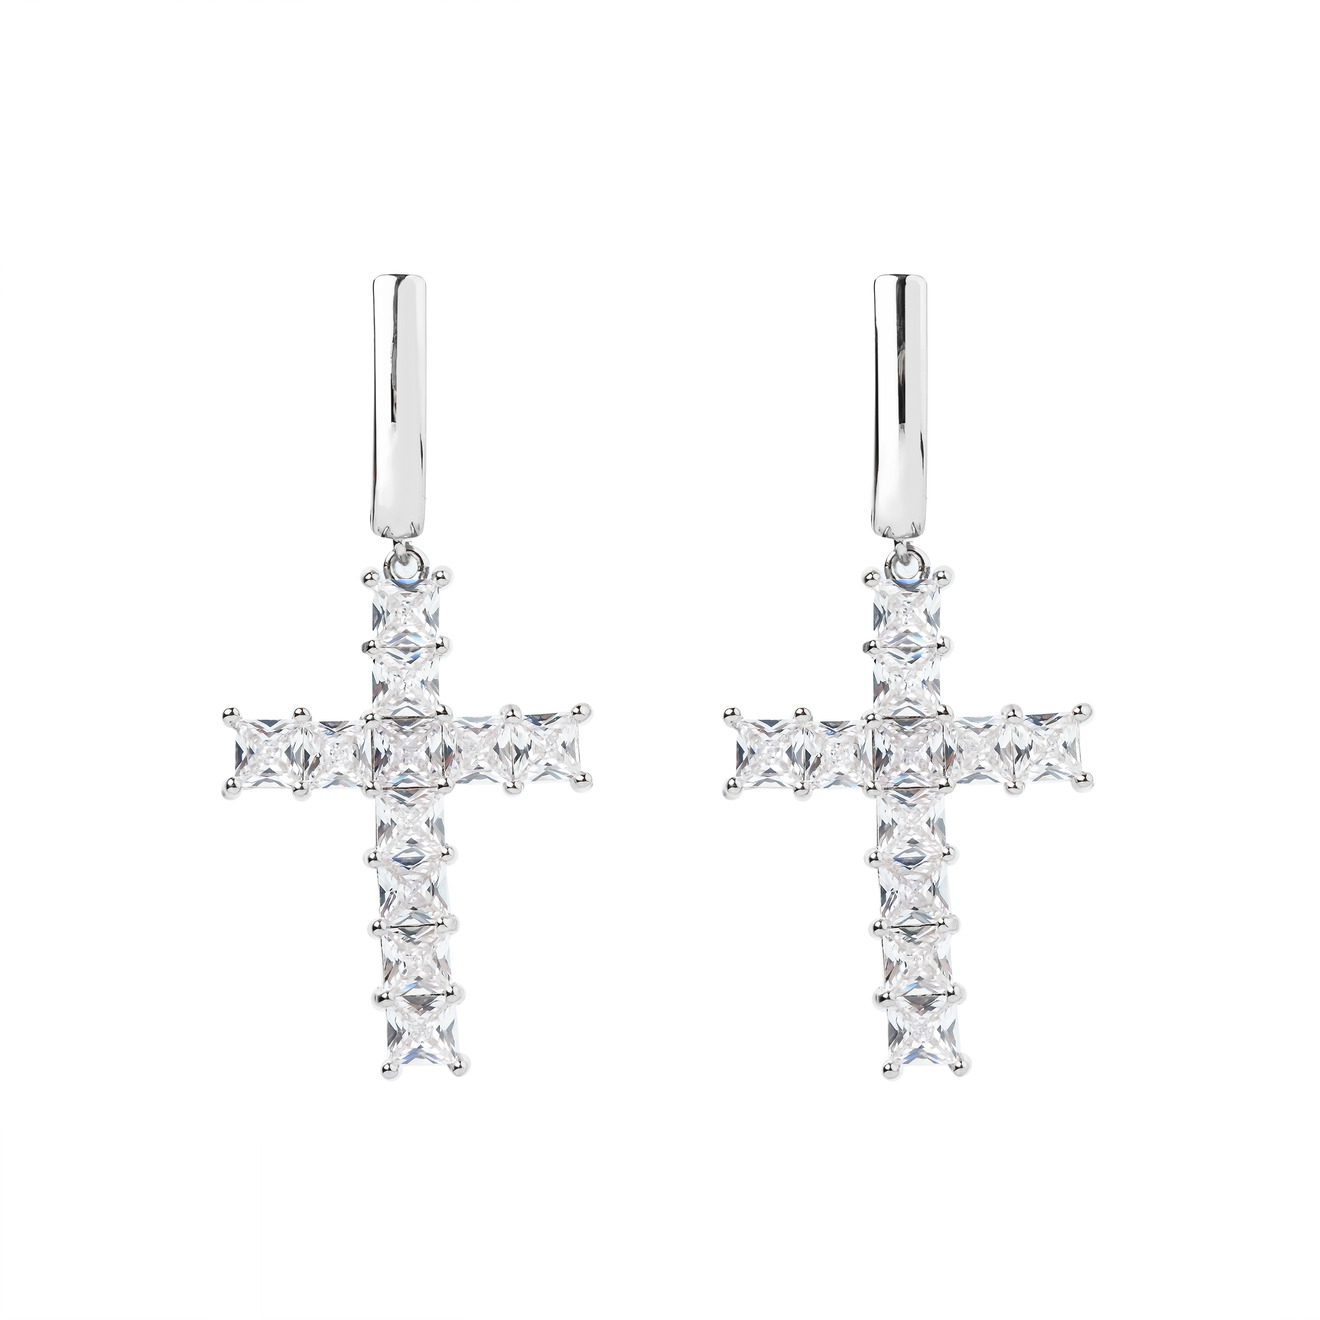 Herald Percy Серебристые серьги-кресты с кристаллами herald percy серебристые серьги кольца с кристаллами